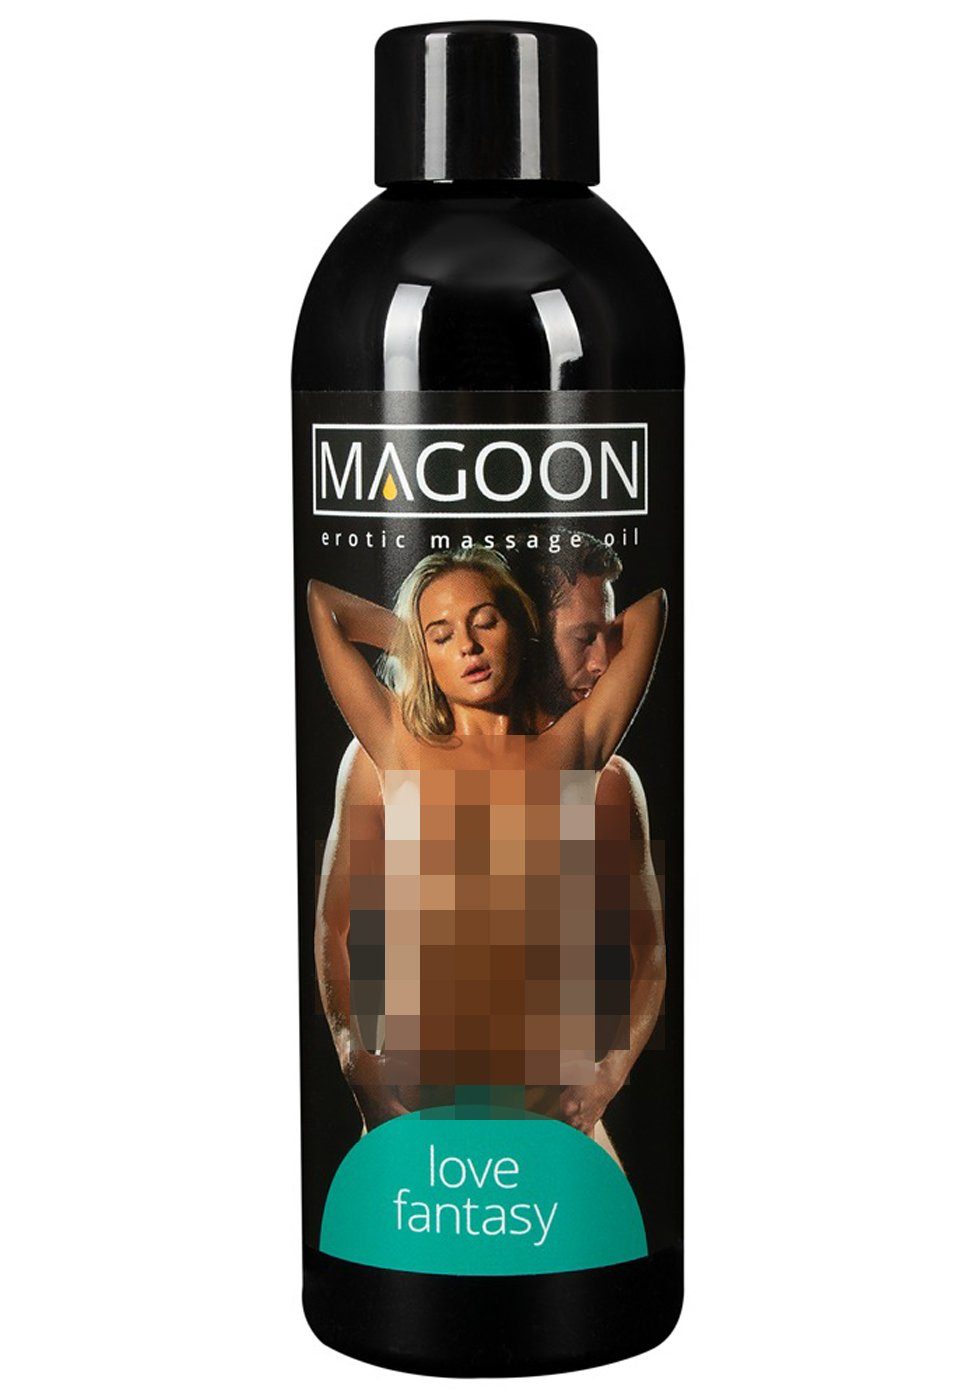 200 Love - Erotik ml Magoon Fantasy Massageöl Massage-Öl